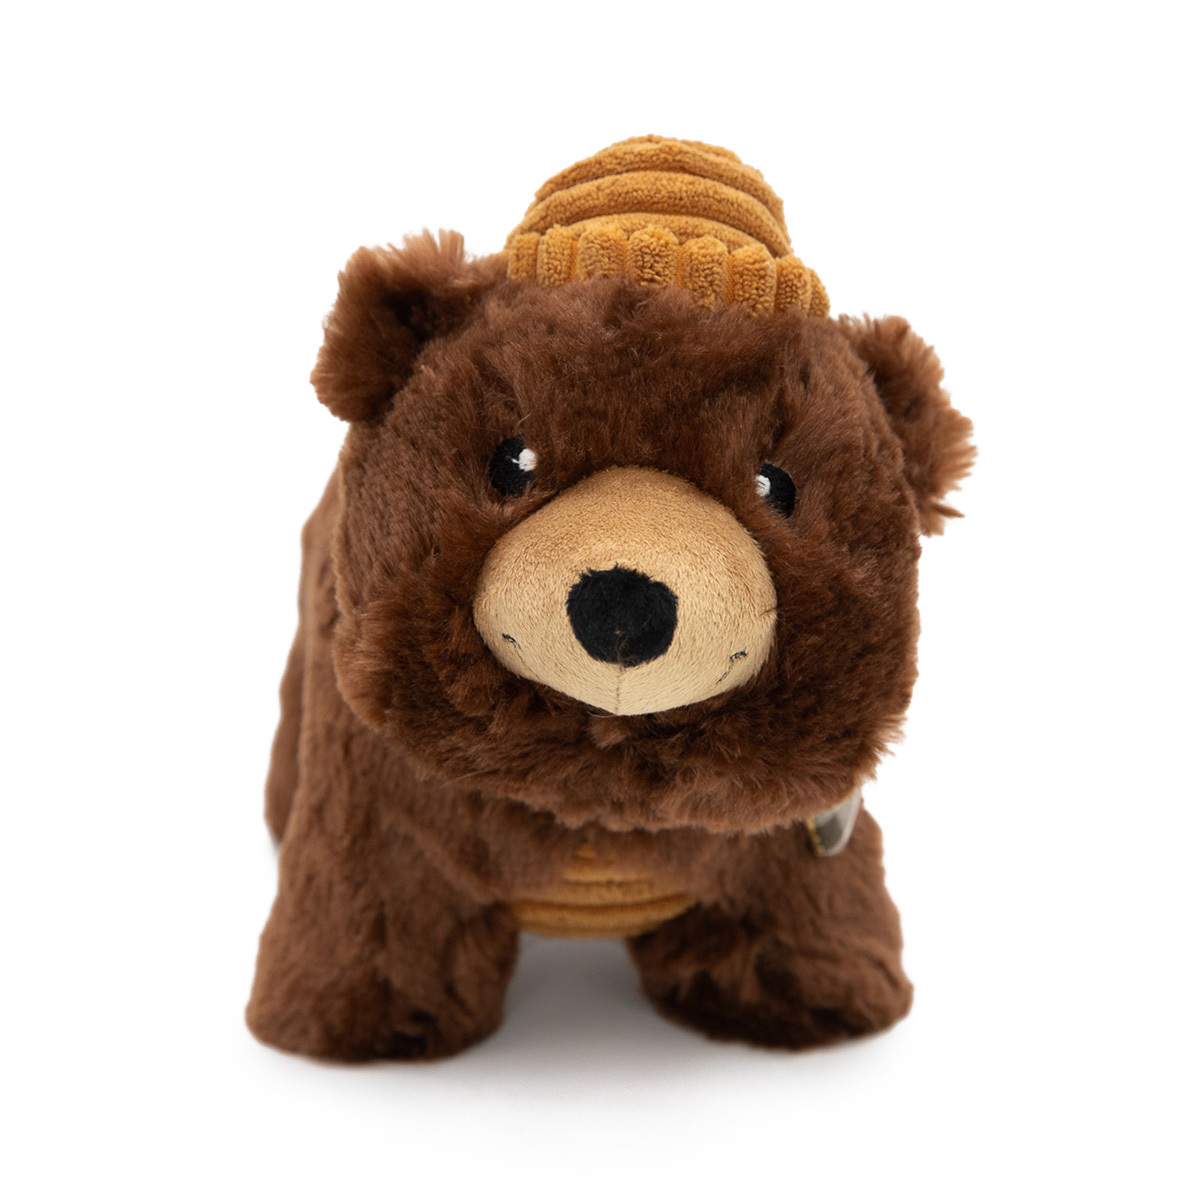 ZippyPaws Grunterz Bear Plush Dog Toy for medium to large dogs.